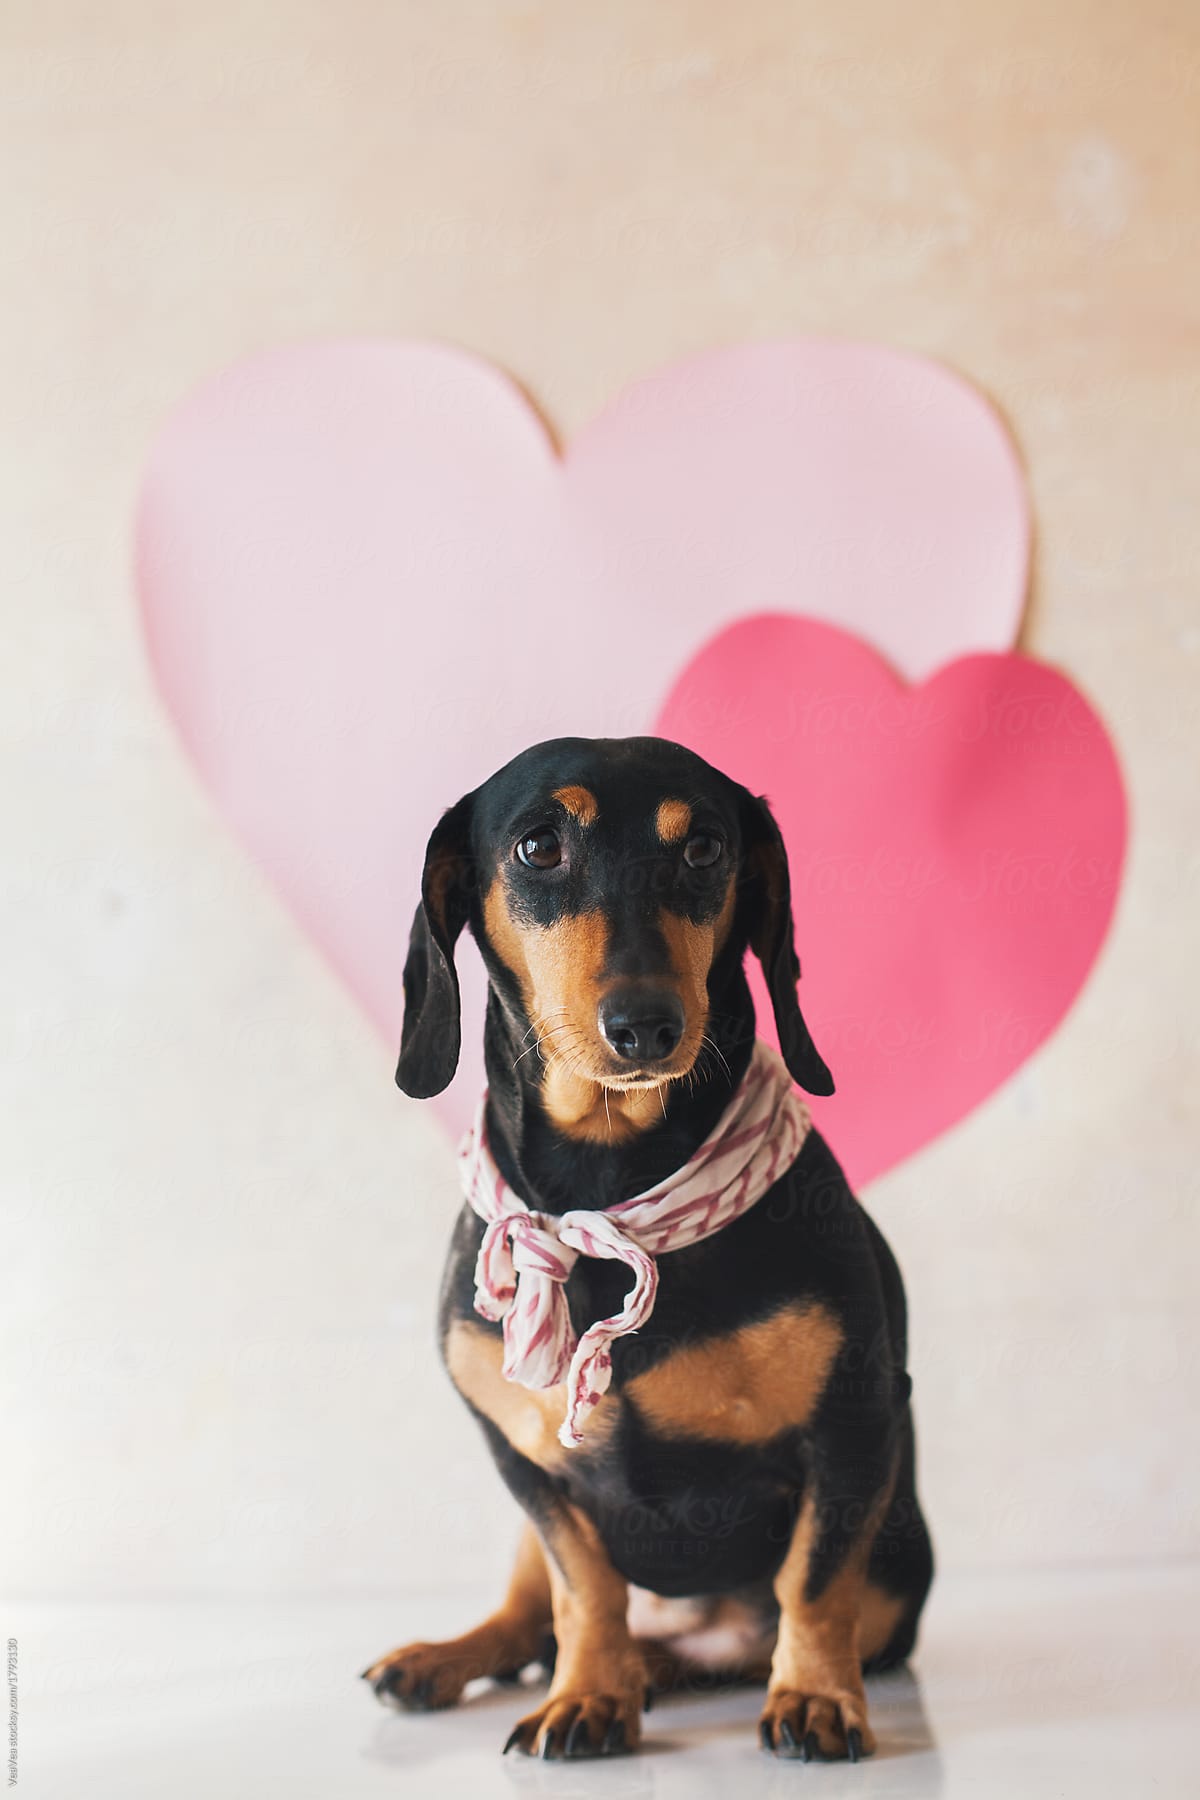 Cute dachshund wearing a scarf